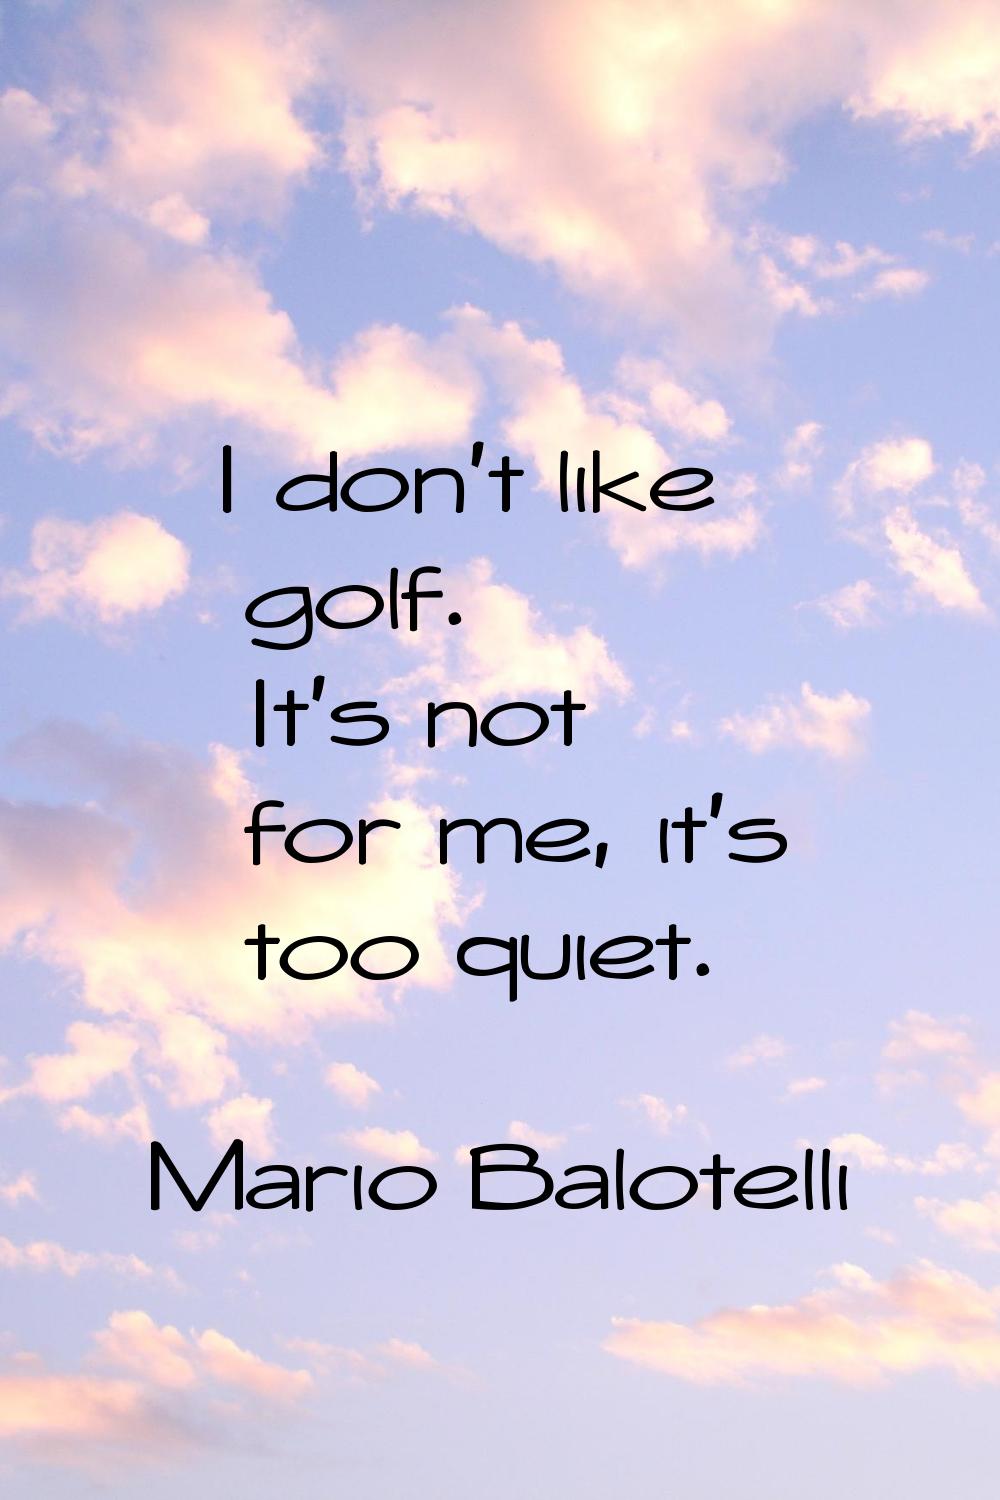 I don't like golf. It's not for me, it's too quiet.